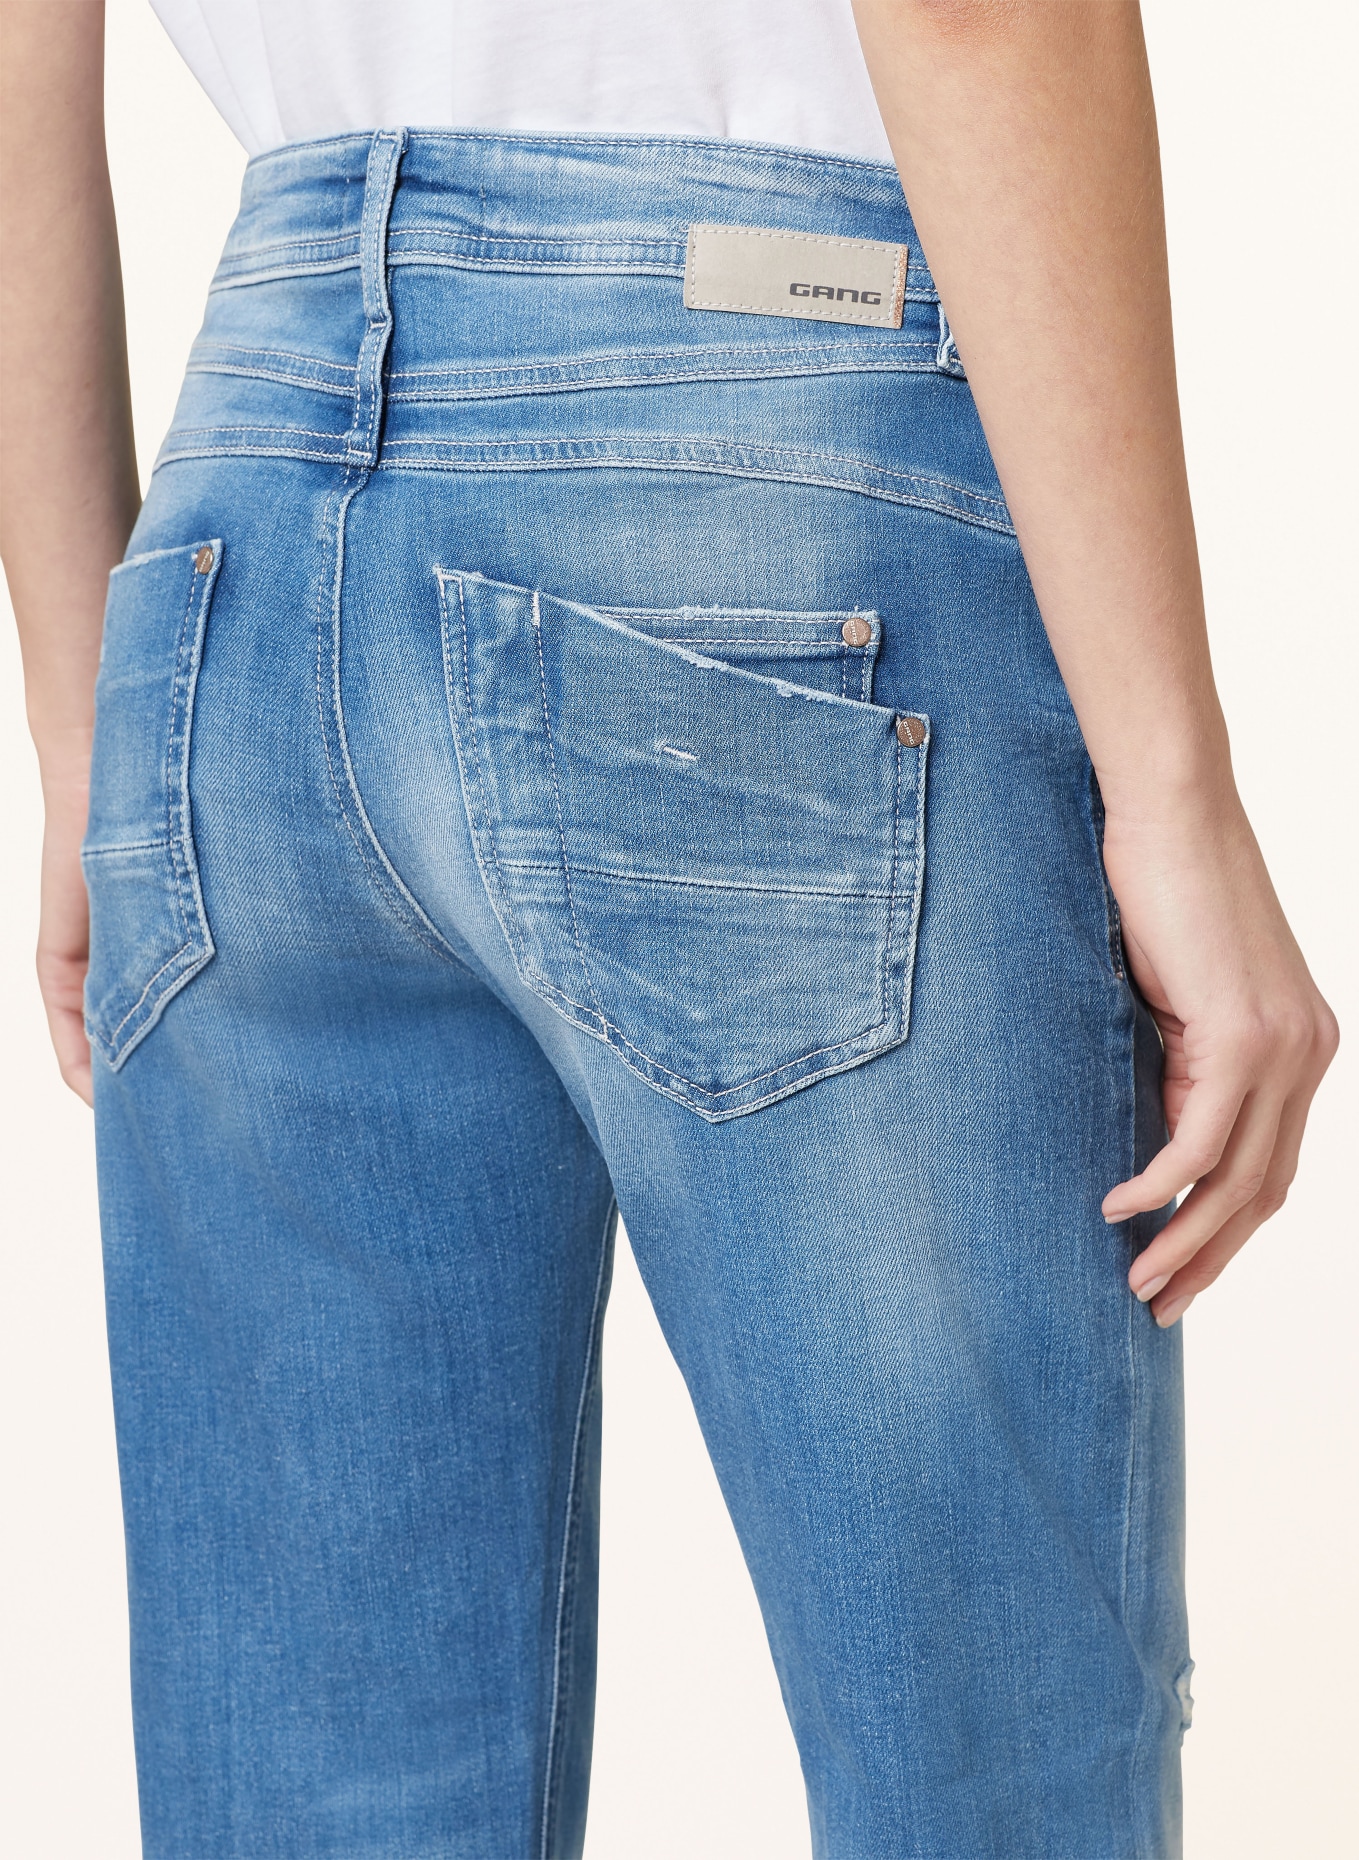 GANG Jeans AMELIE, Color: 7699 lovly destoxed (Image 6)